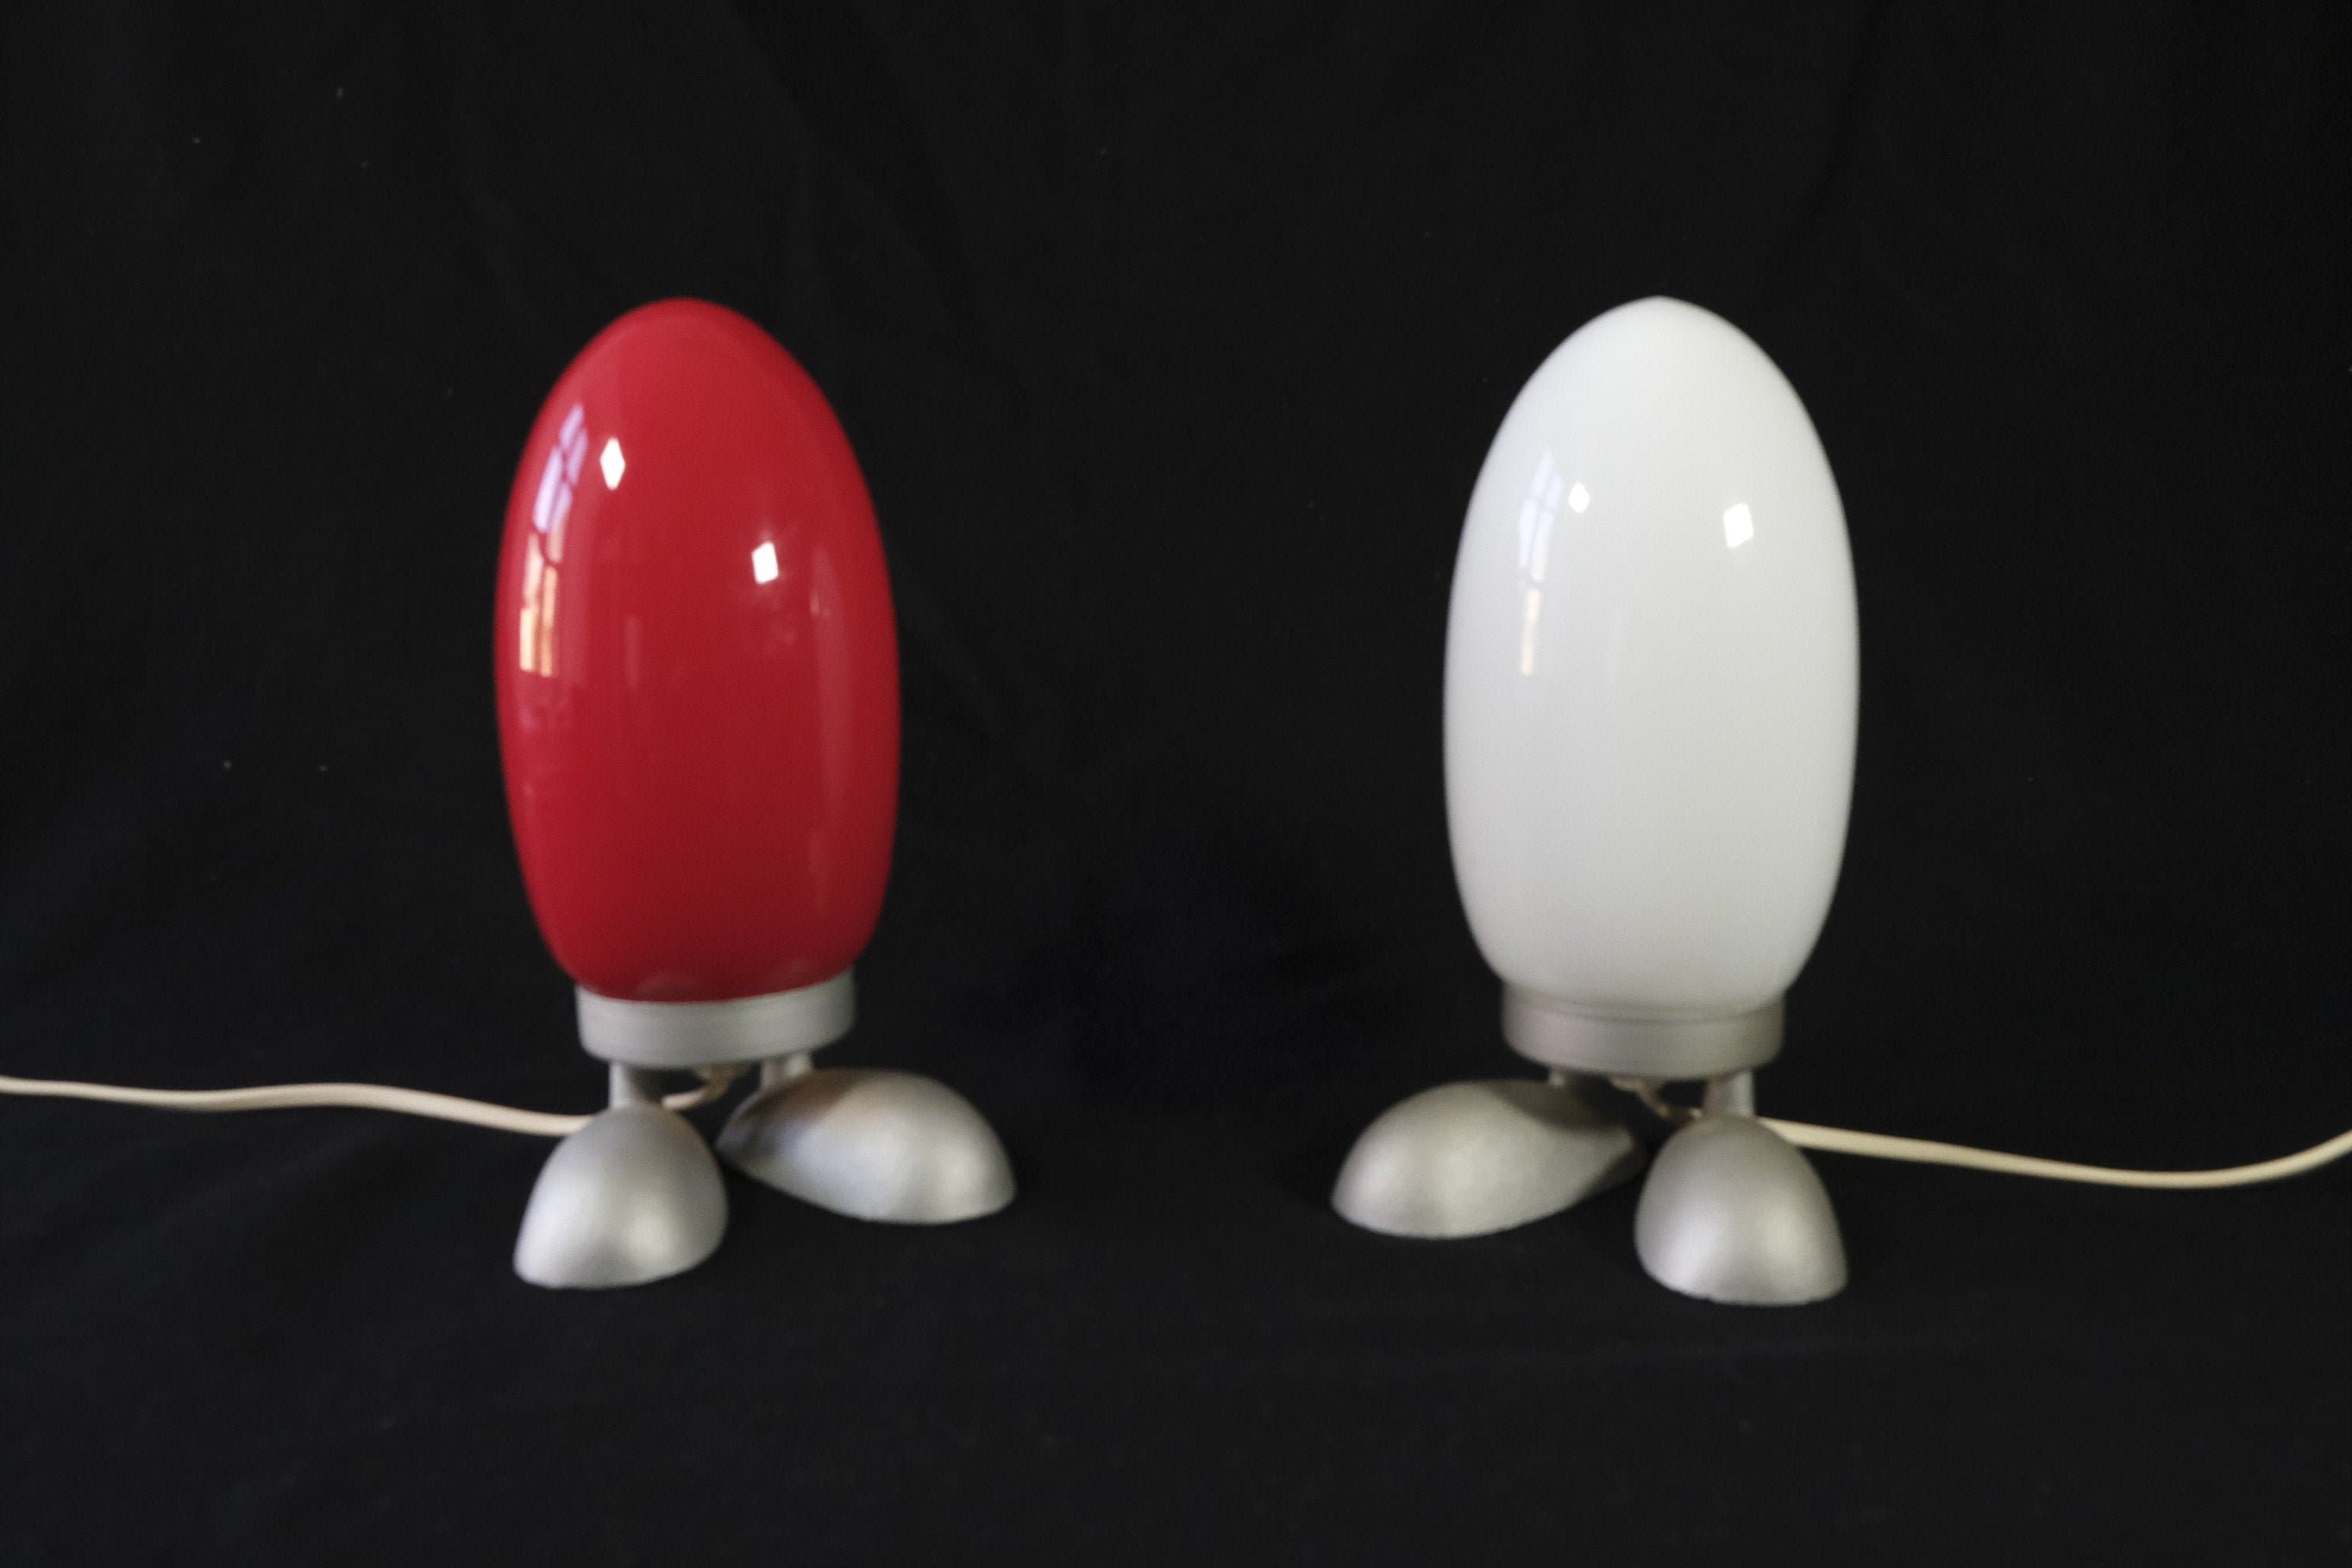 Ikea Fjorton/Paire d'oeufs de Dinosaures Rouges et Blancs Vintage Lampe Table Lampes Chevet